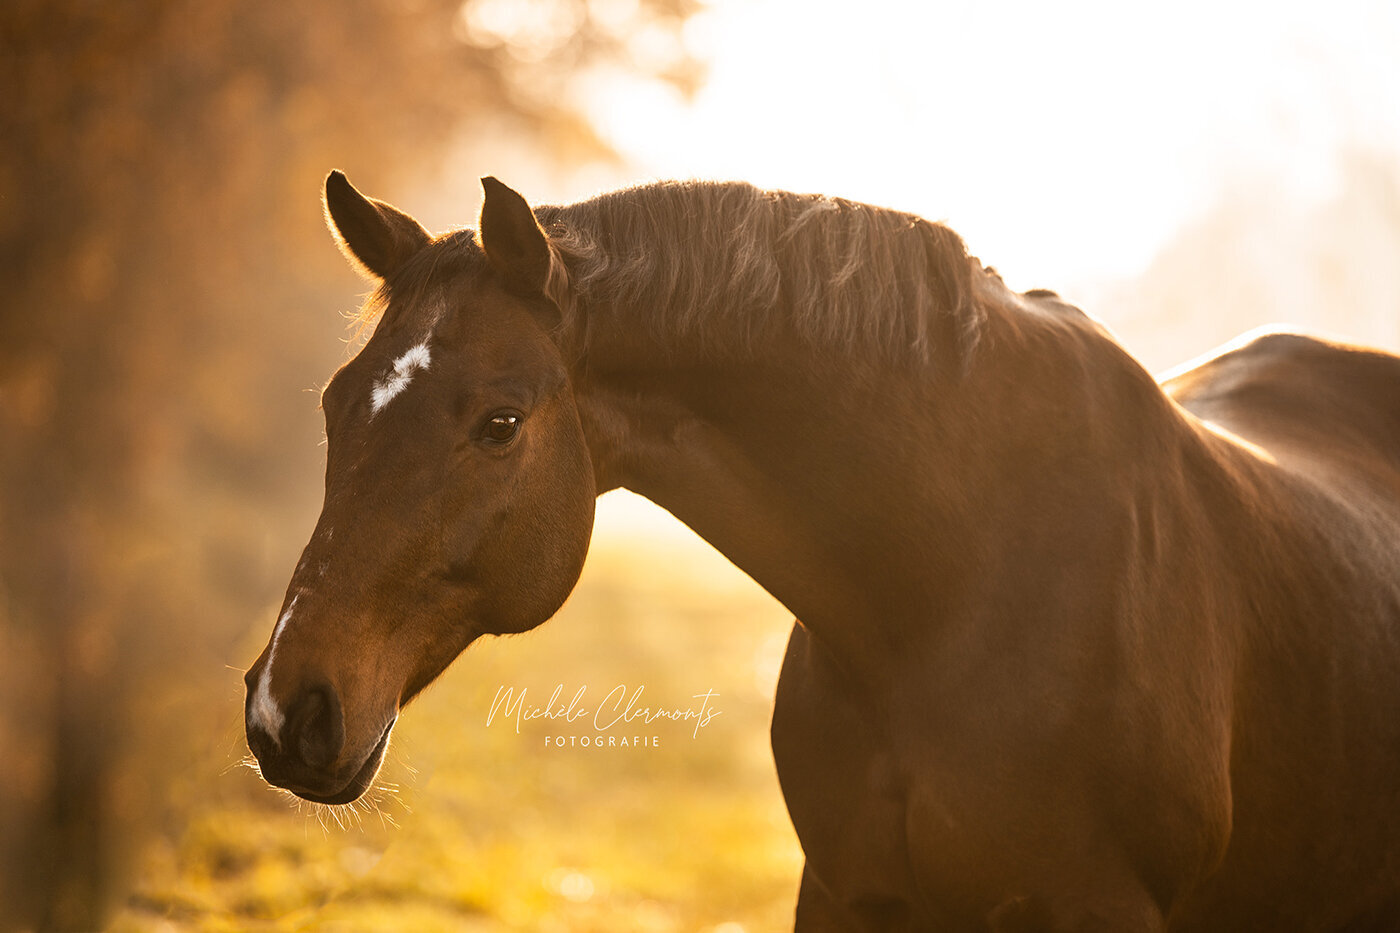 DSC_1351-paardenfotografie-michèle clermonts fotografie-low